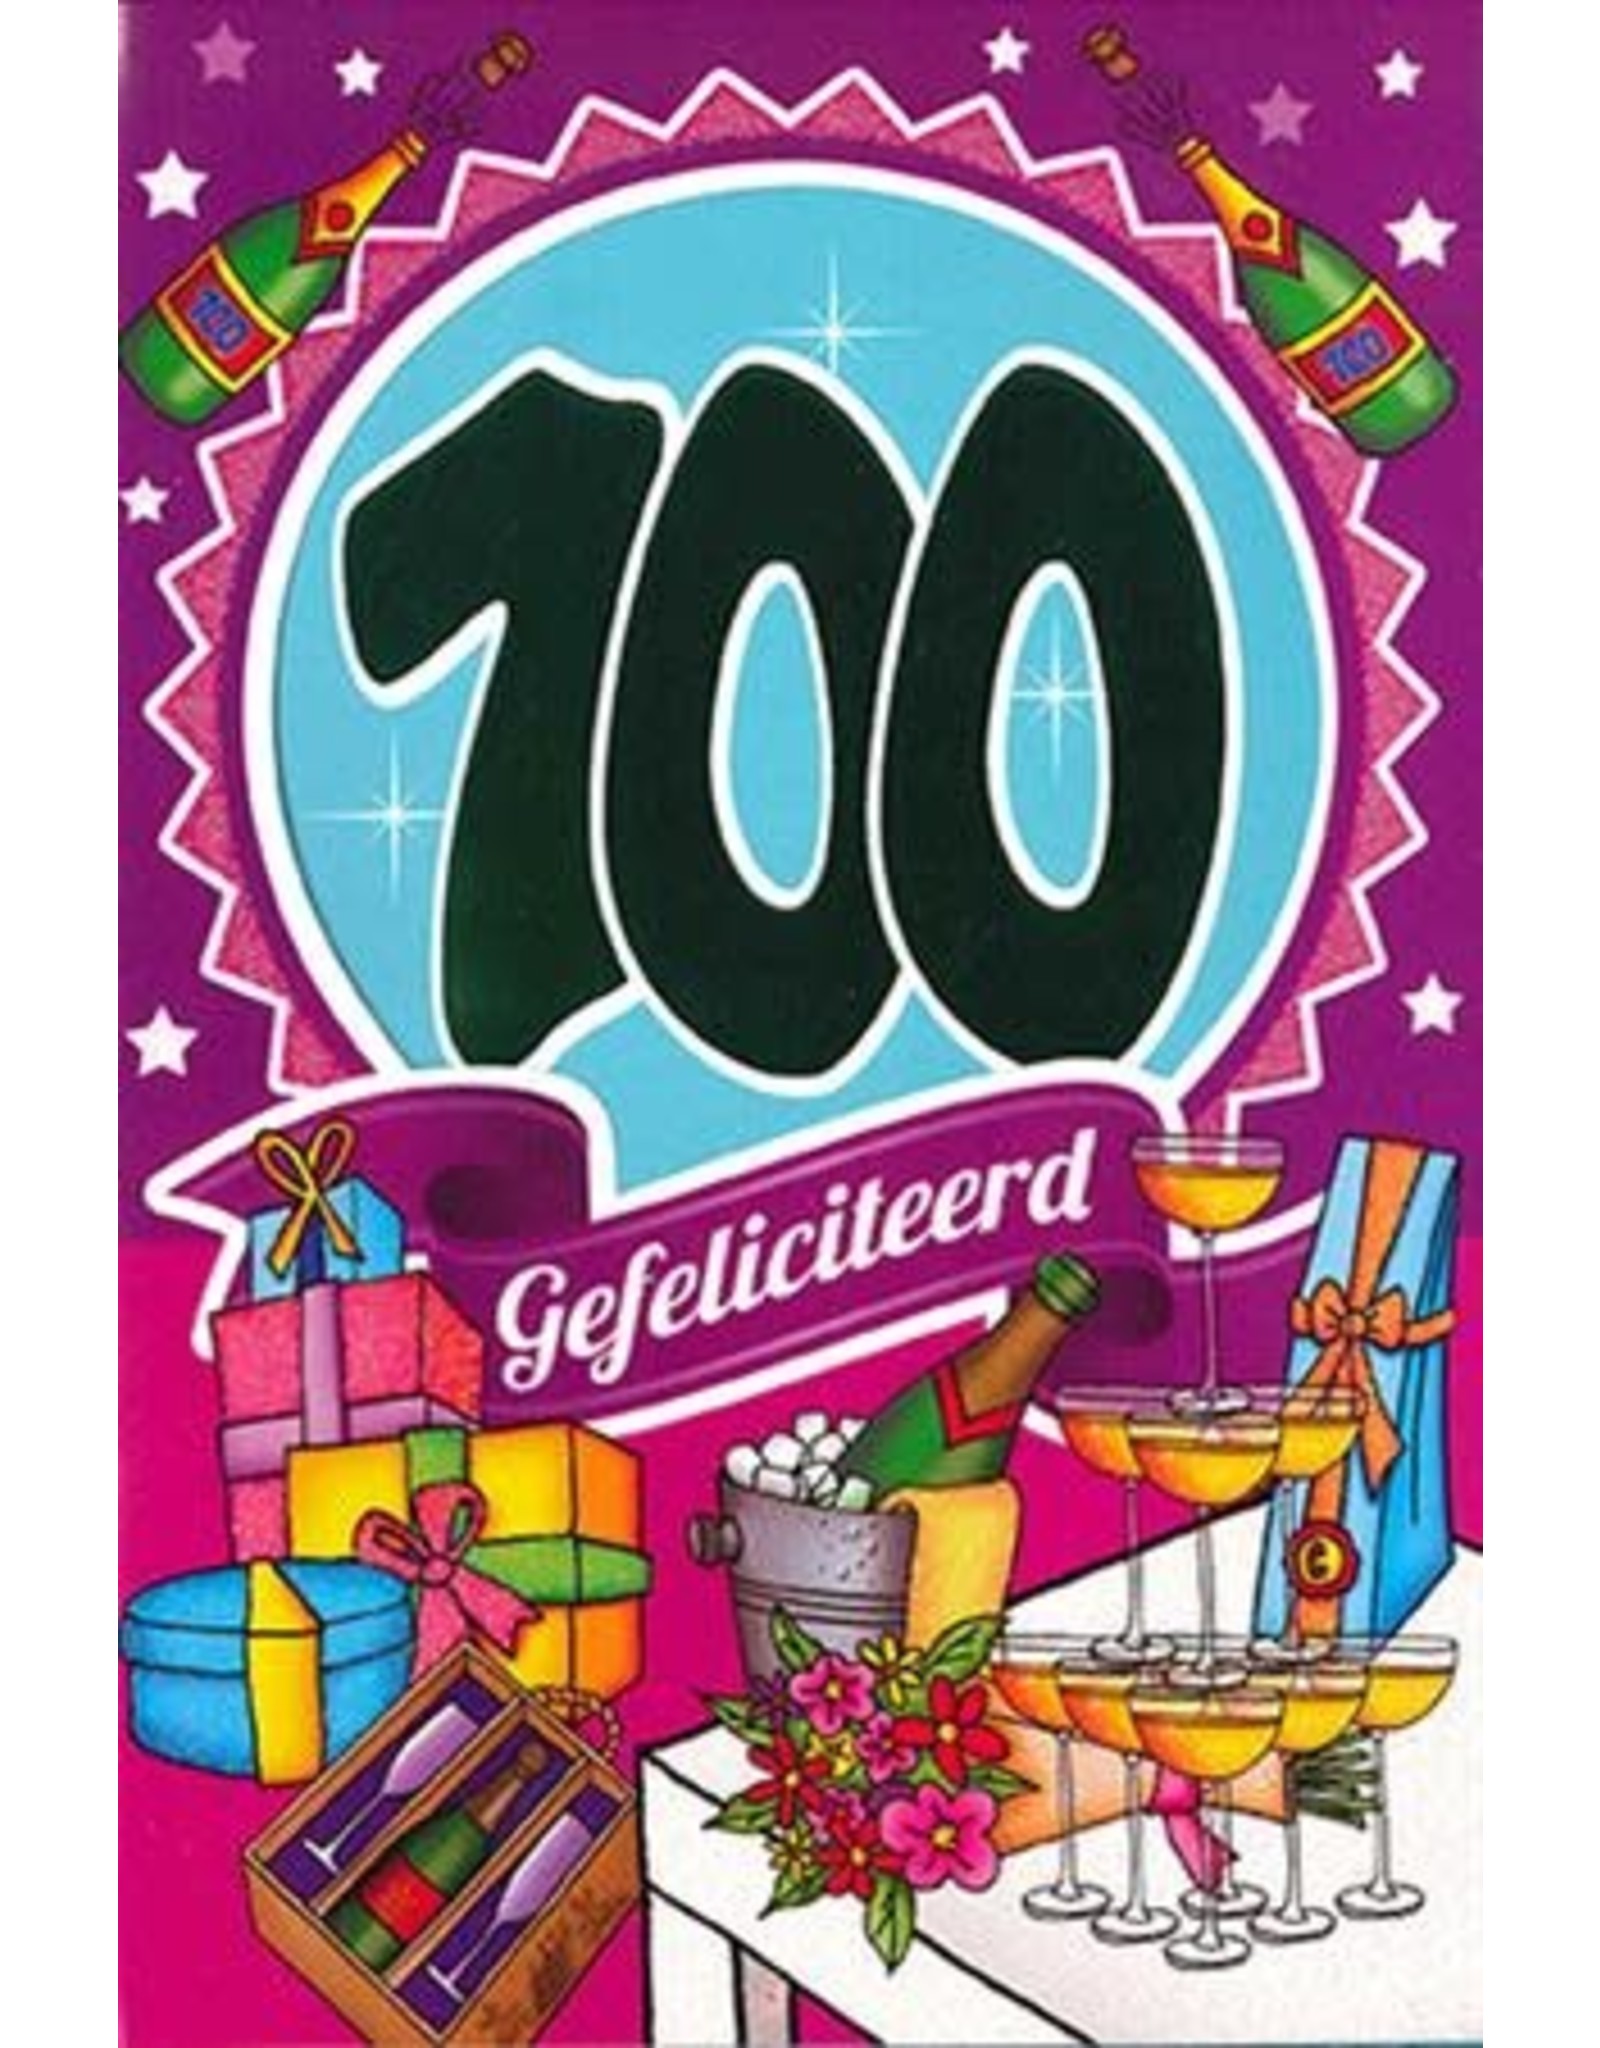 MGP CARDS Wenskaart MGP CARDS 100 gefeliciteerd met envolop